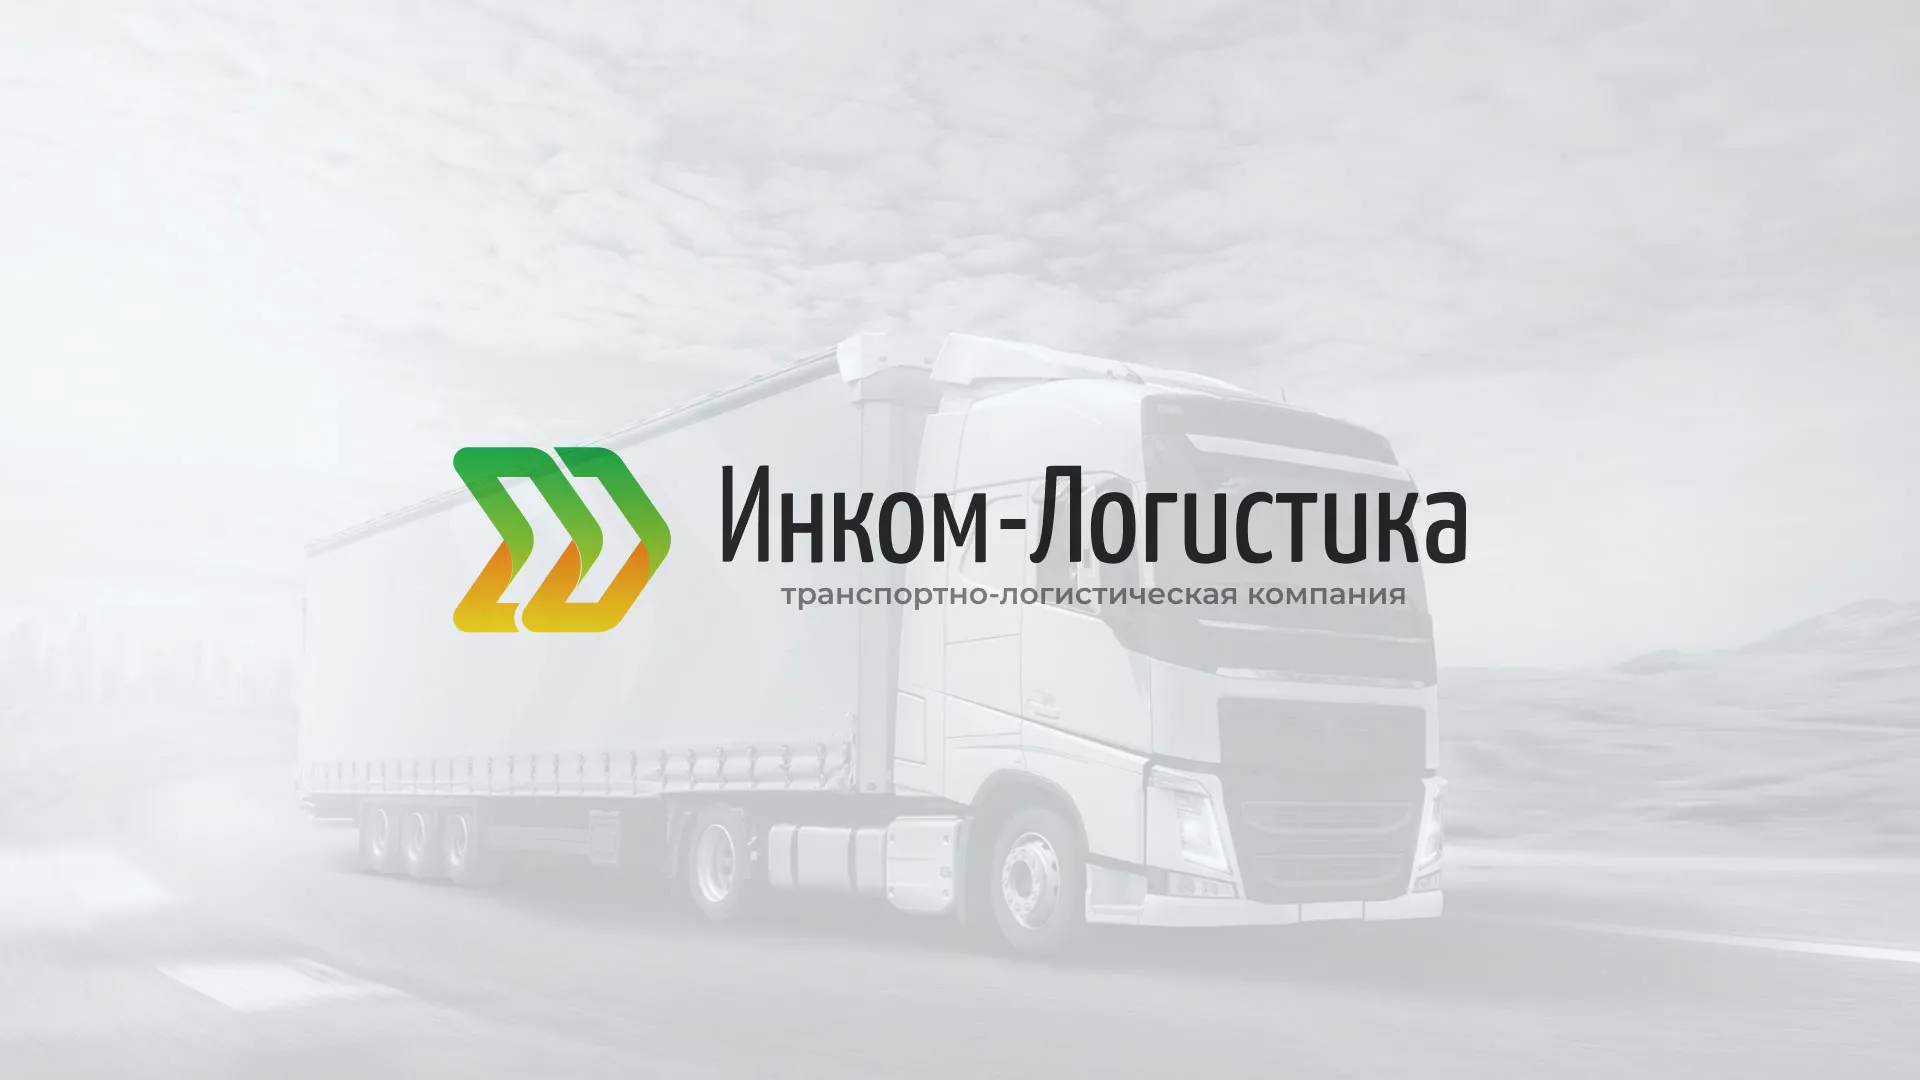 Разработка логотипа и сайта компании «Инком-Логистика» в Азове